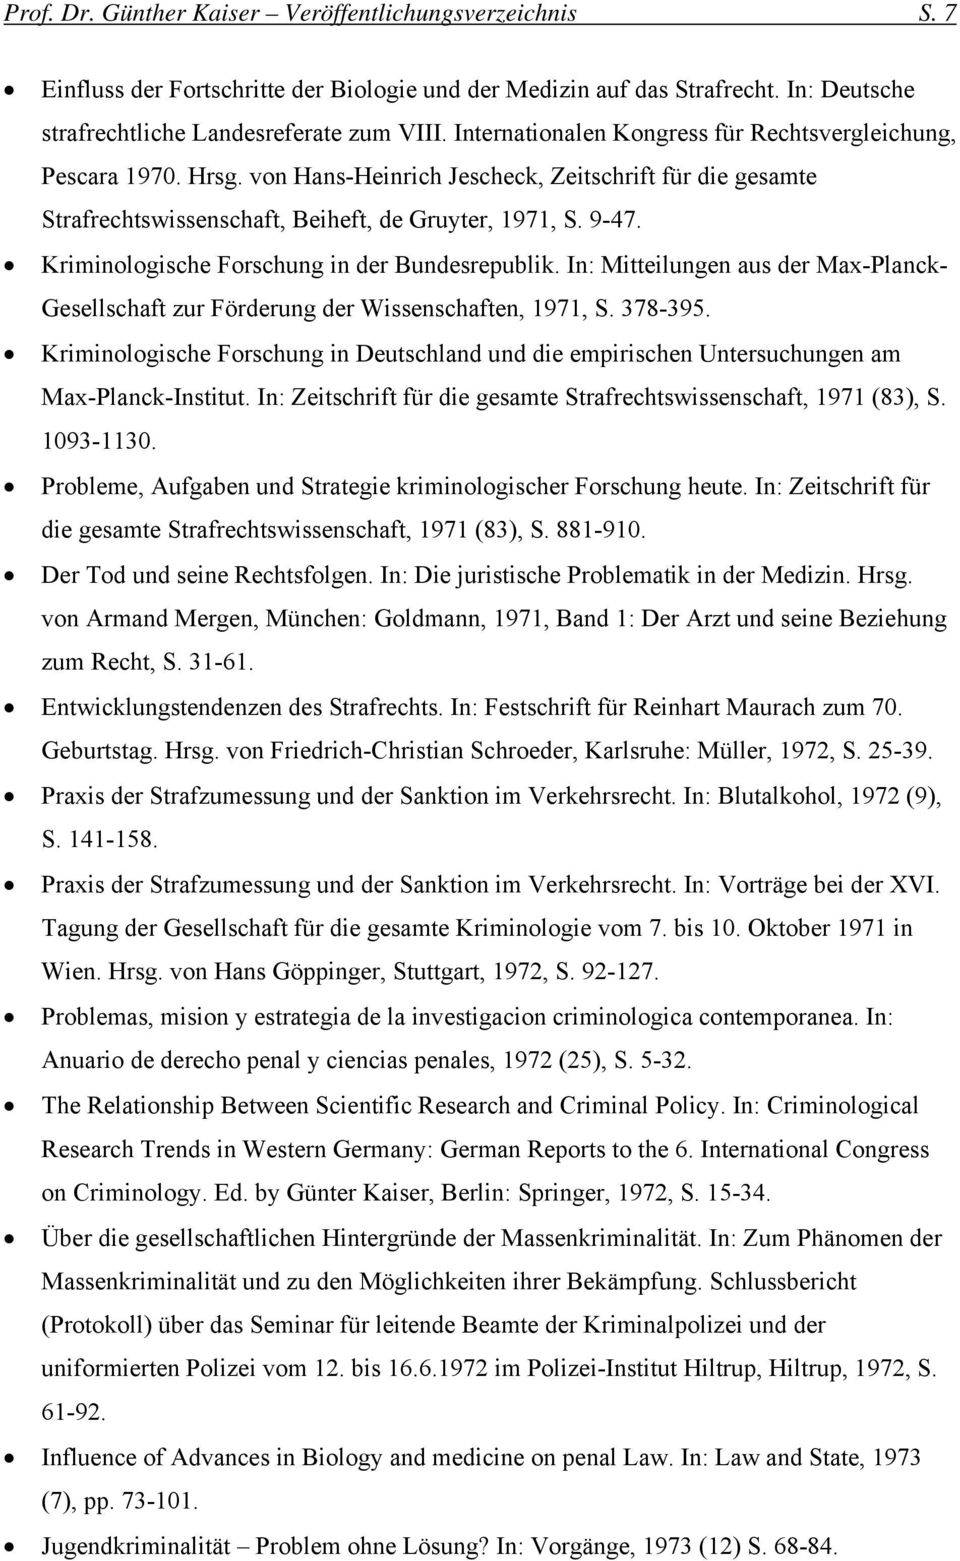 Kriminologische Forschung in der Bundesrepublik. In: Mitteilungen aus der Max-Planck- Gesellschaft zur Förderung der Wissenschaften, 1971, S. 378-395.